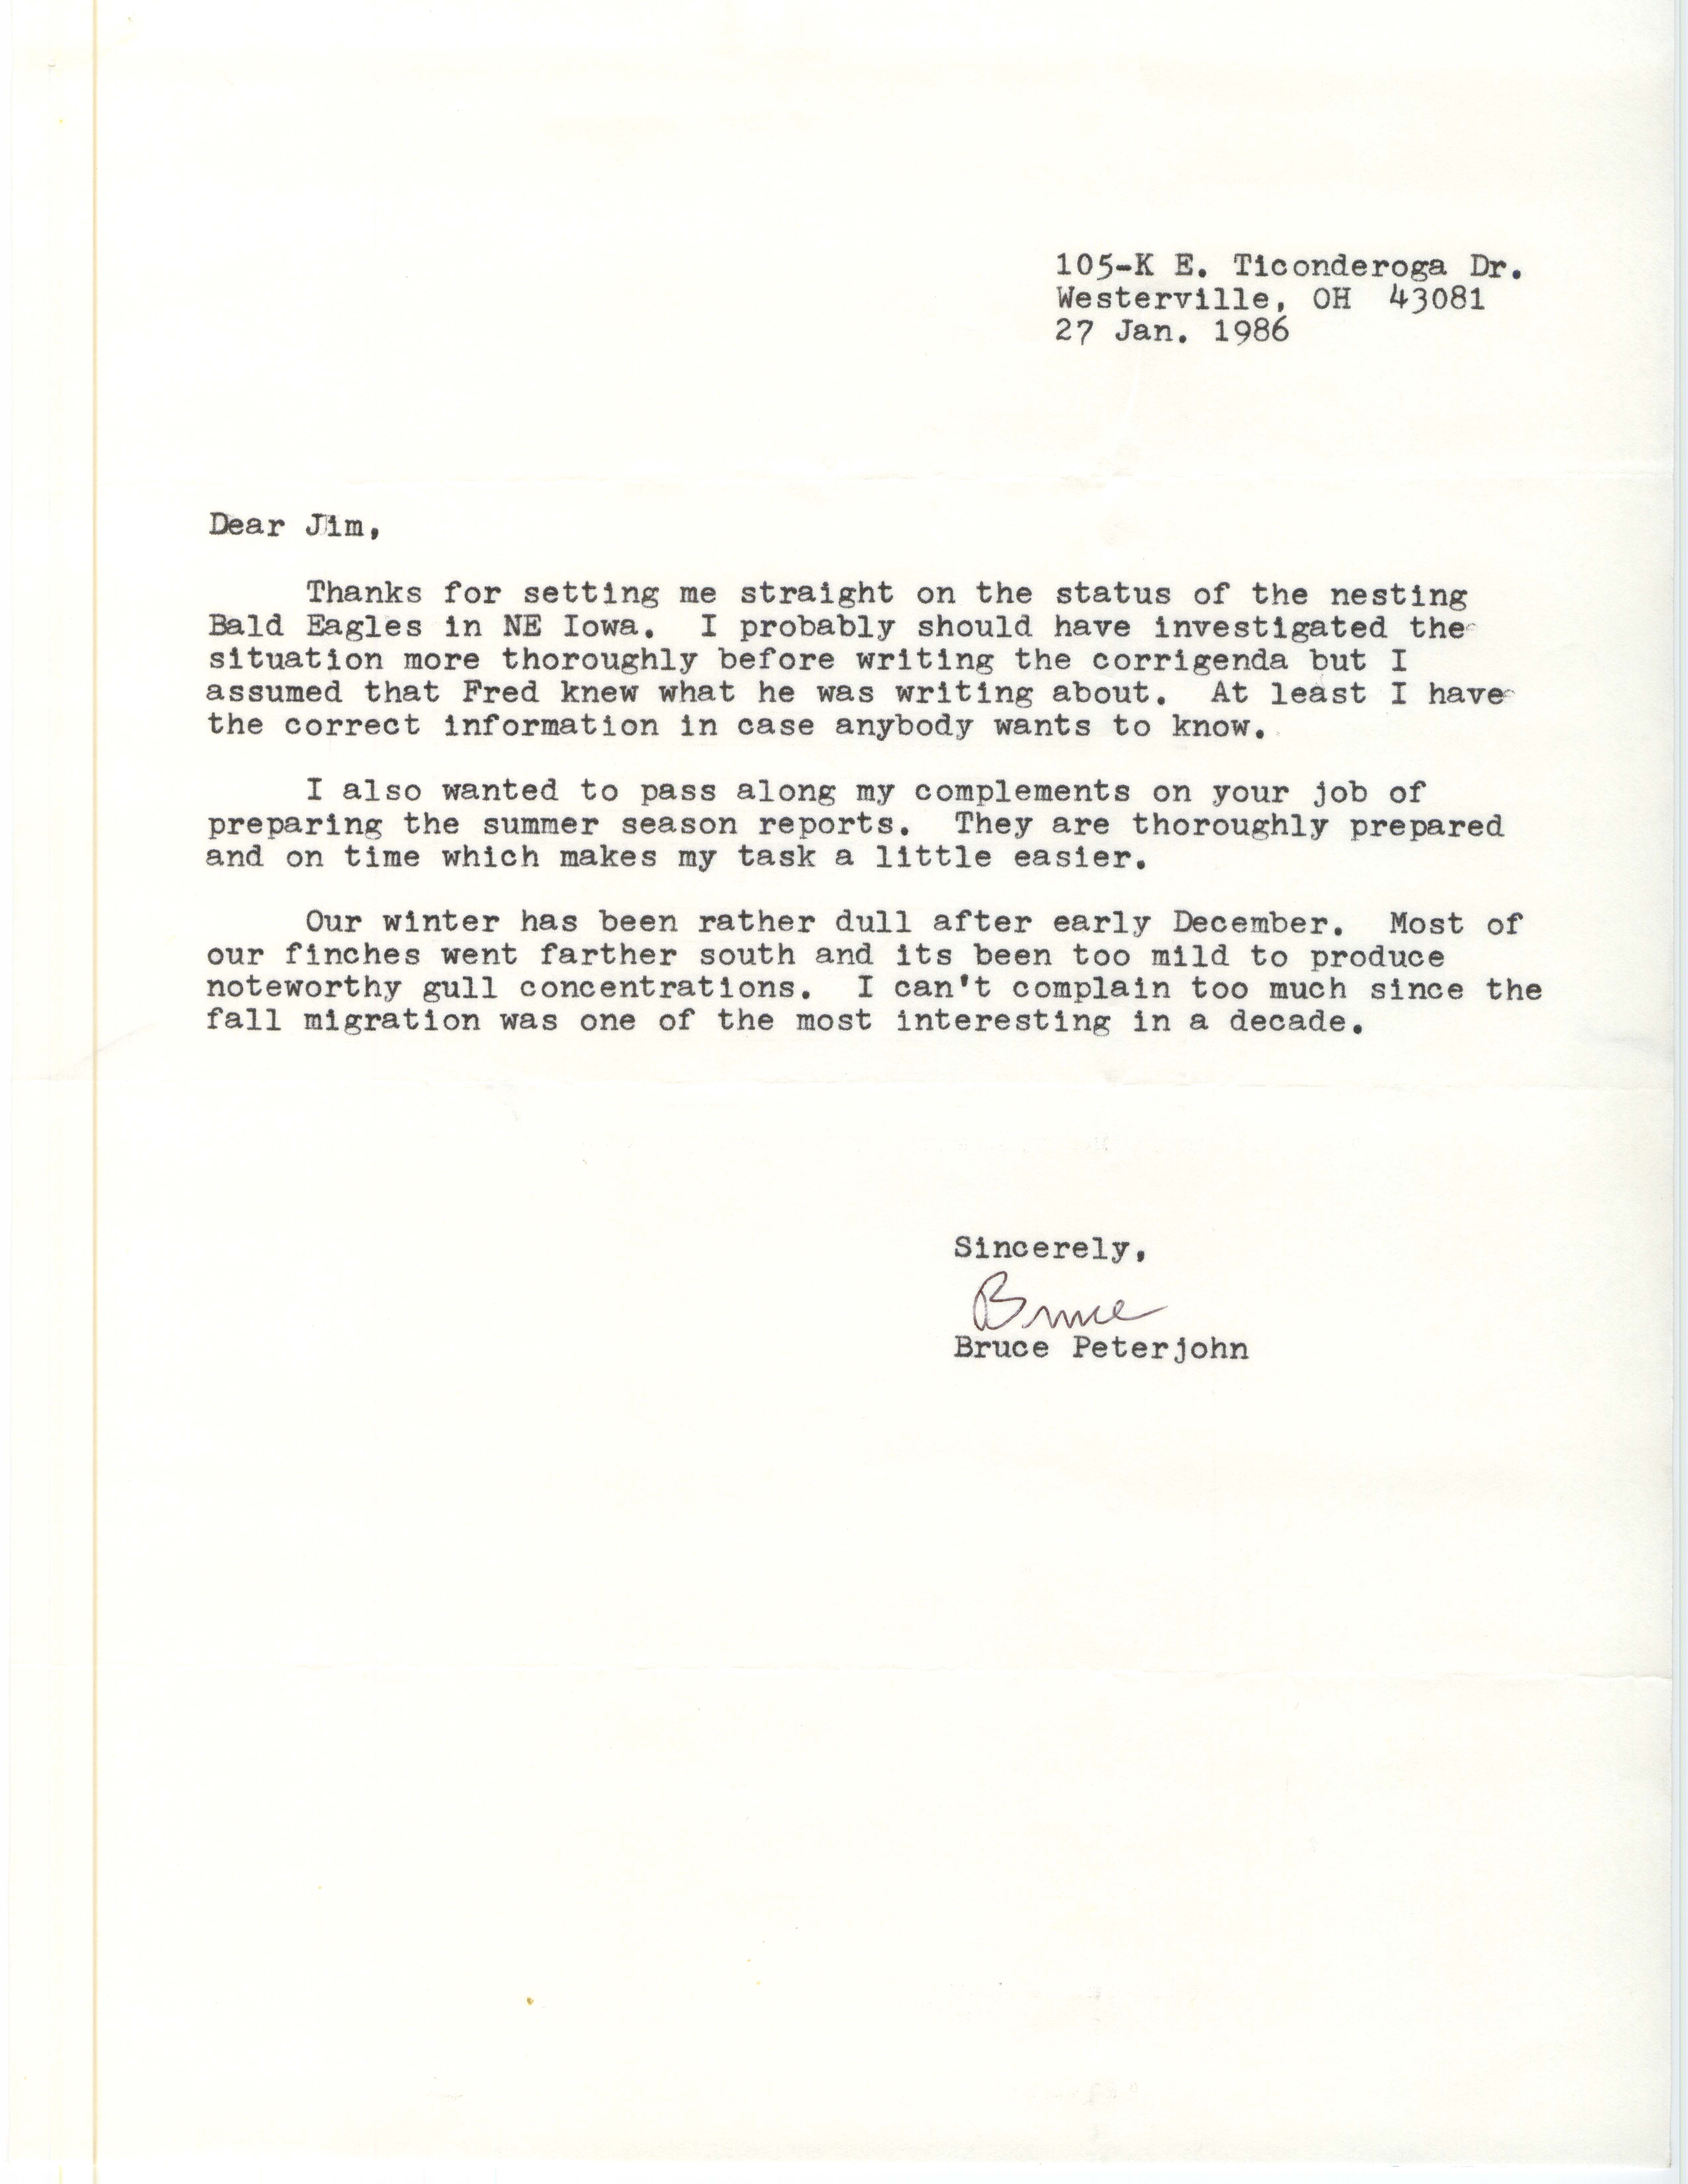 Bruce G. Peterjohn letter to James J. Dinsmore regarding his Bald Eagle nest letter, January 27, 1986